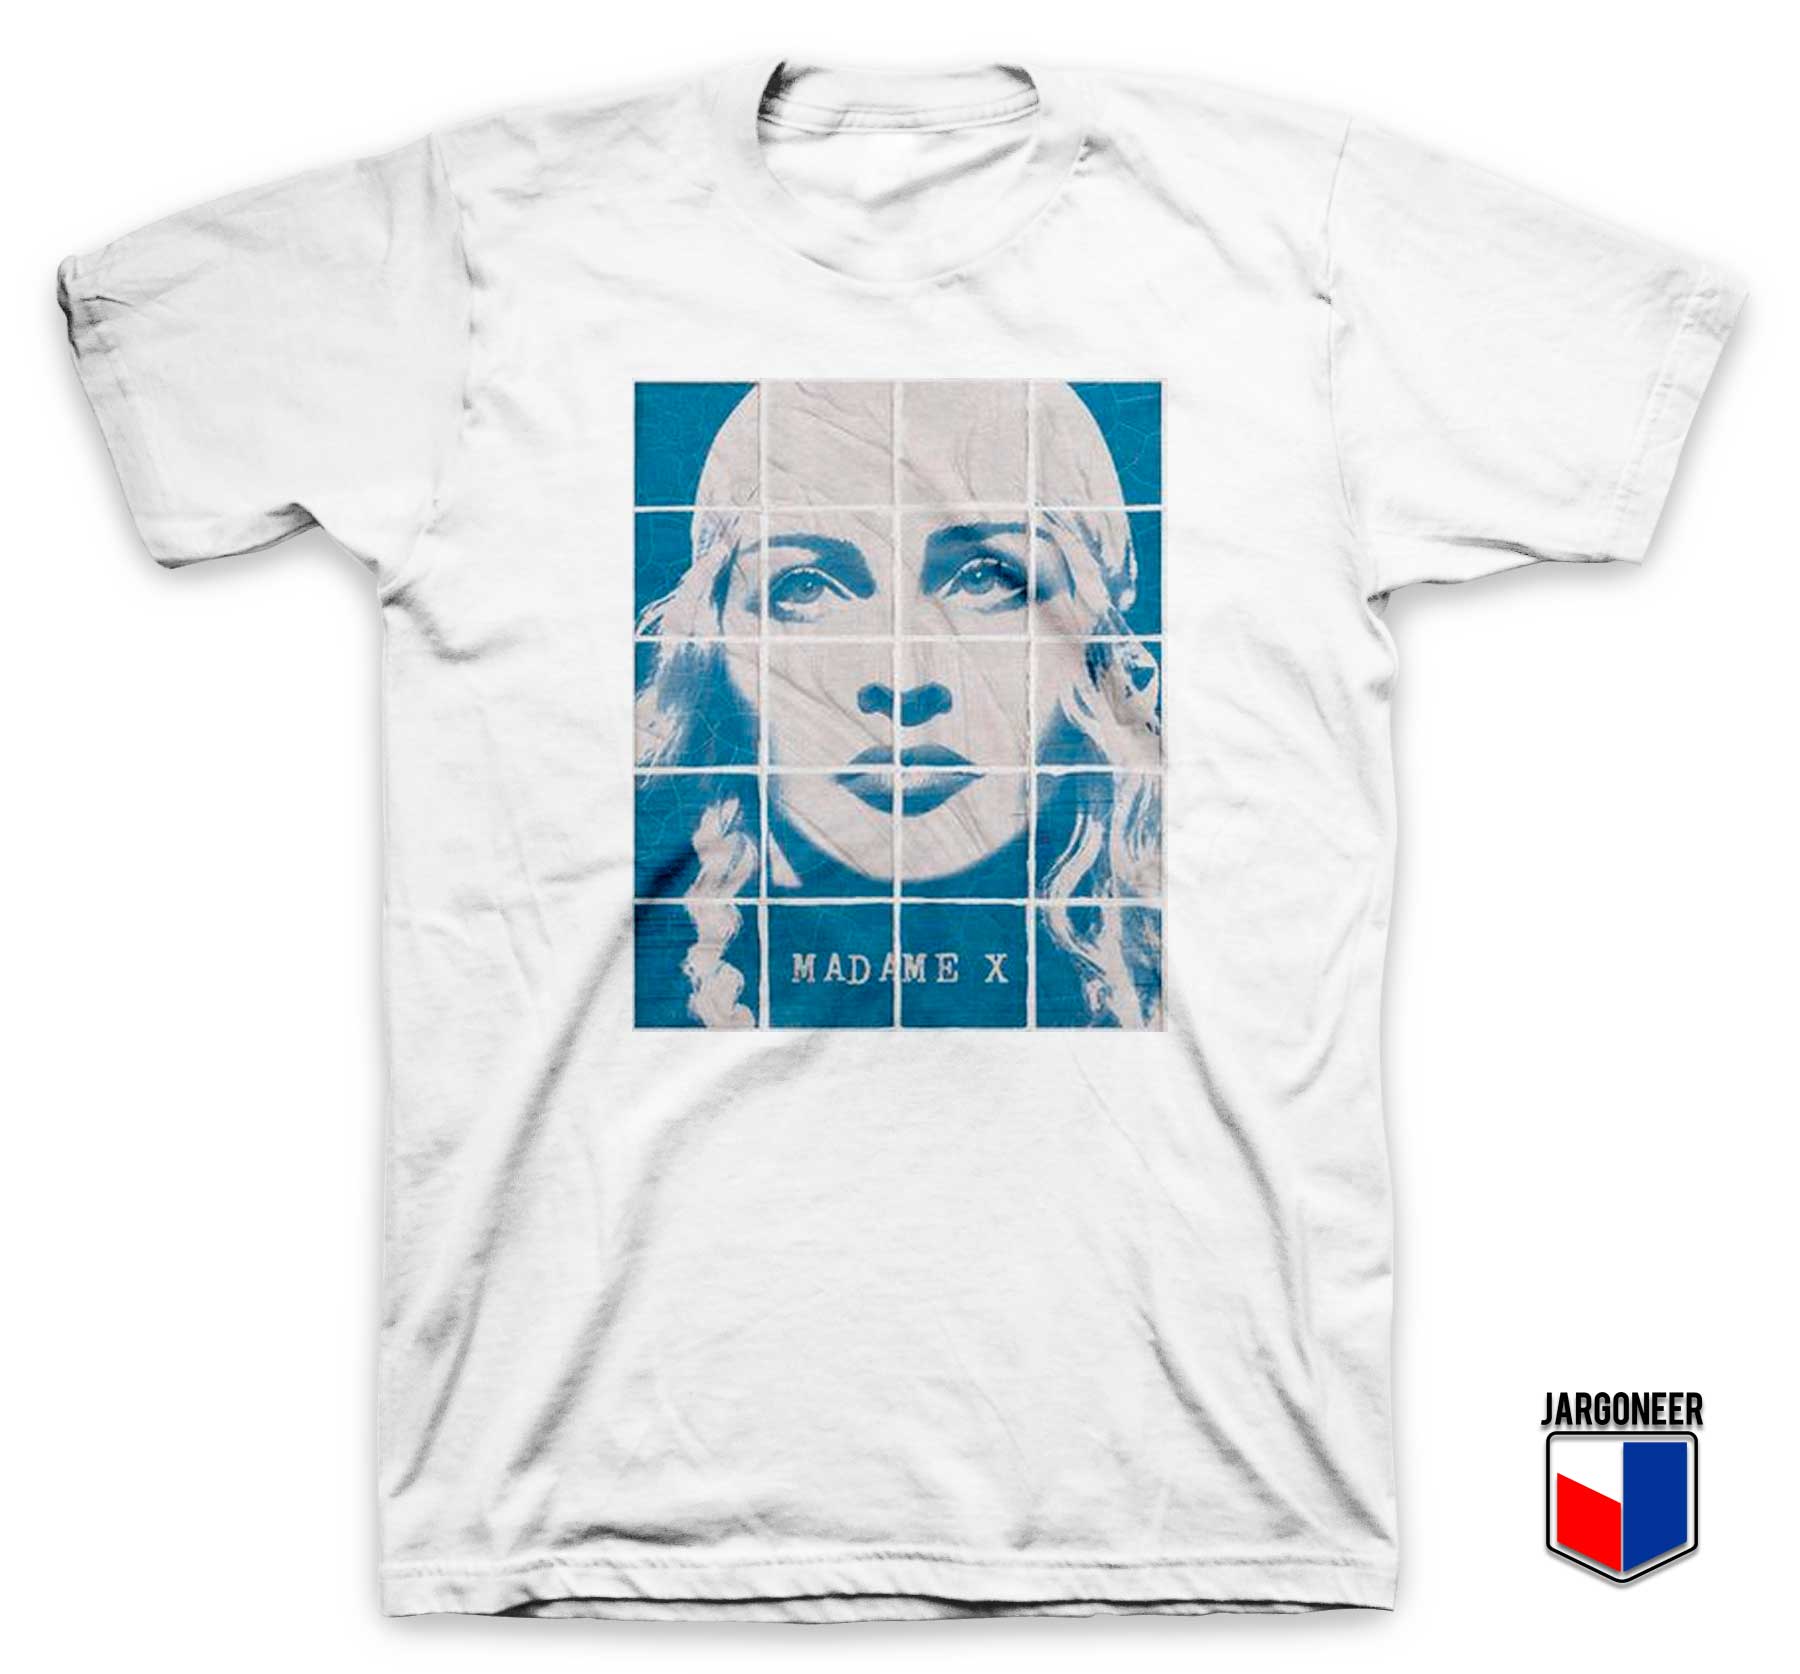 Madonna Madame X T Shirt - Shop Unique Graphic Cool Shirt Designs